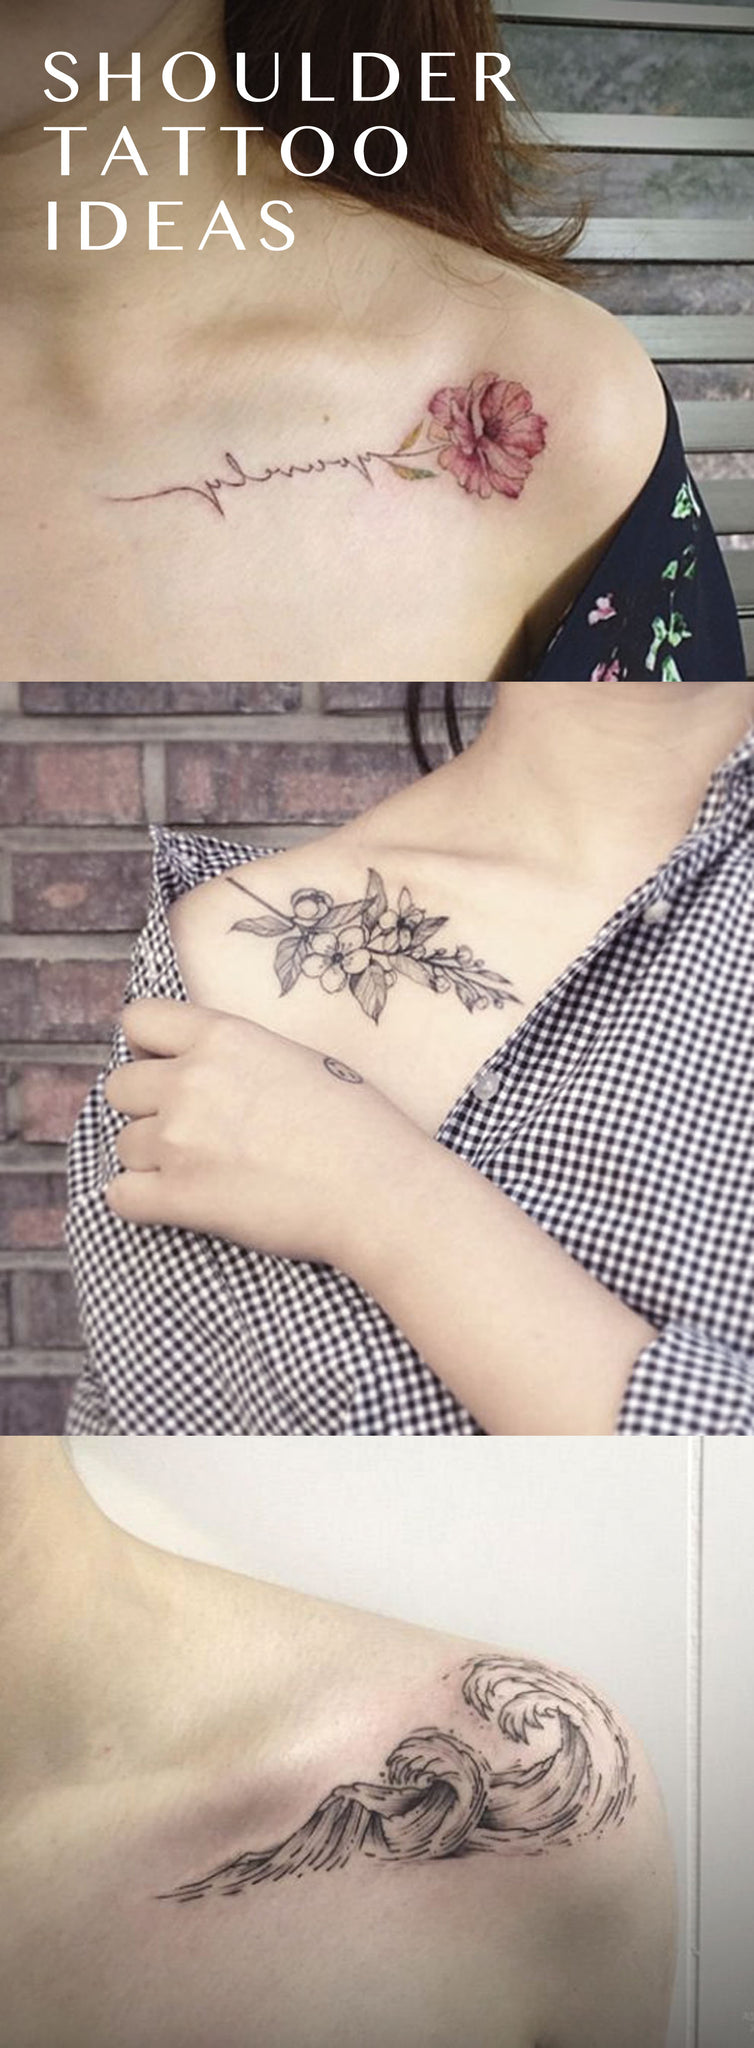 Vintage Black Flower Tattoo Ideas for Women - Traditional Watercolor Floral Ideas Del Tatuaje - Surf Waves Arm Idées de Tatouage - www.MyBodiArt.com 